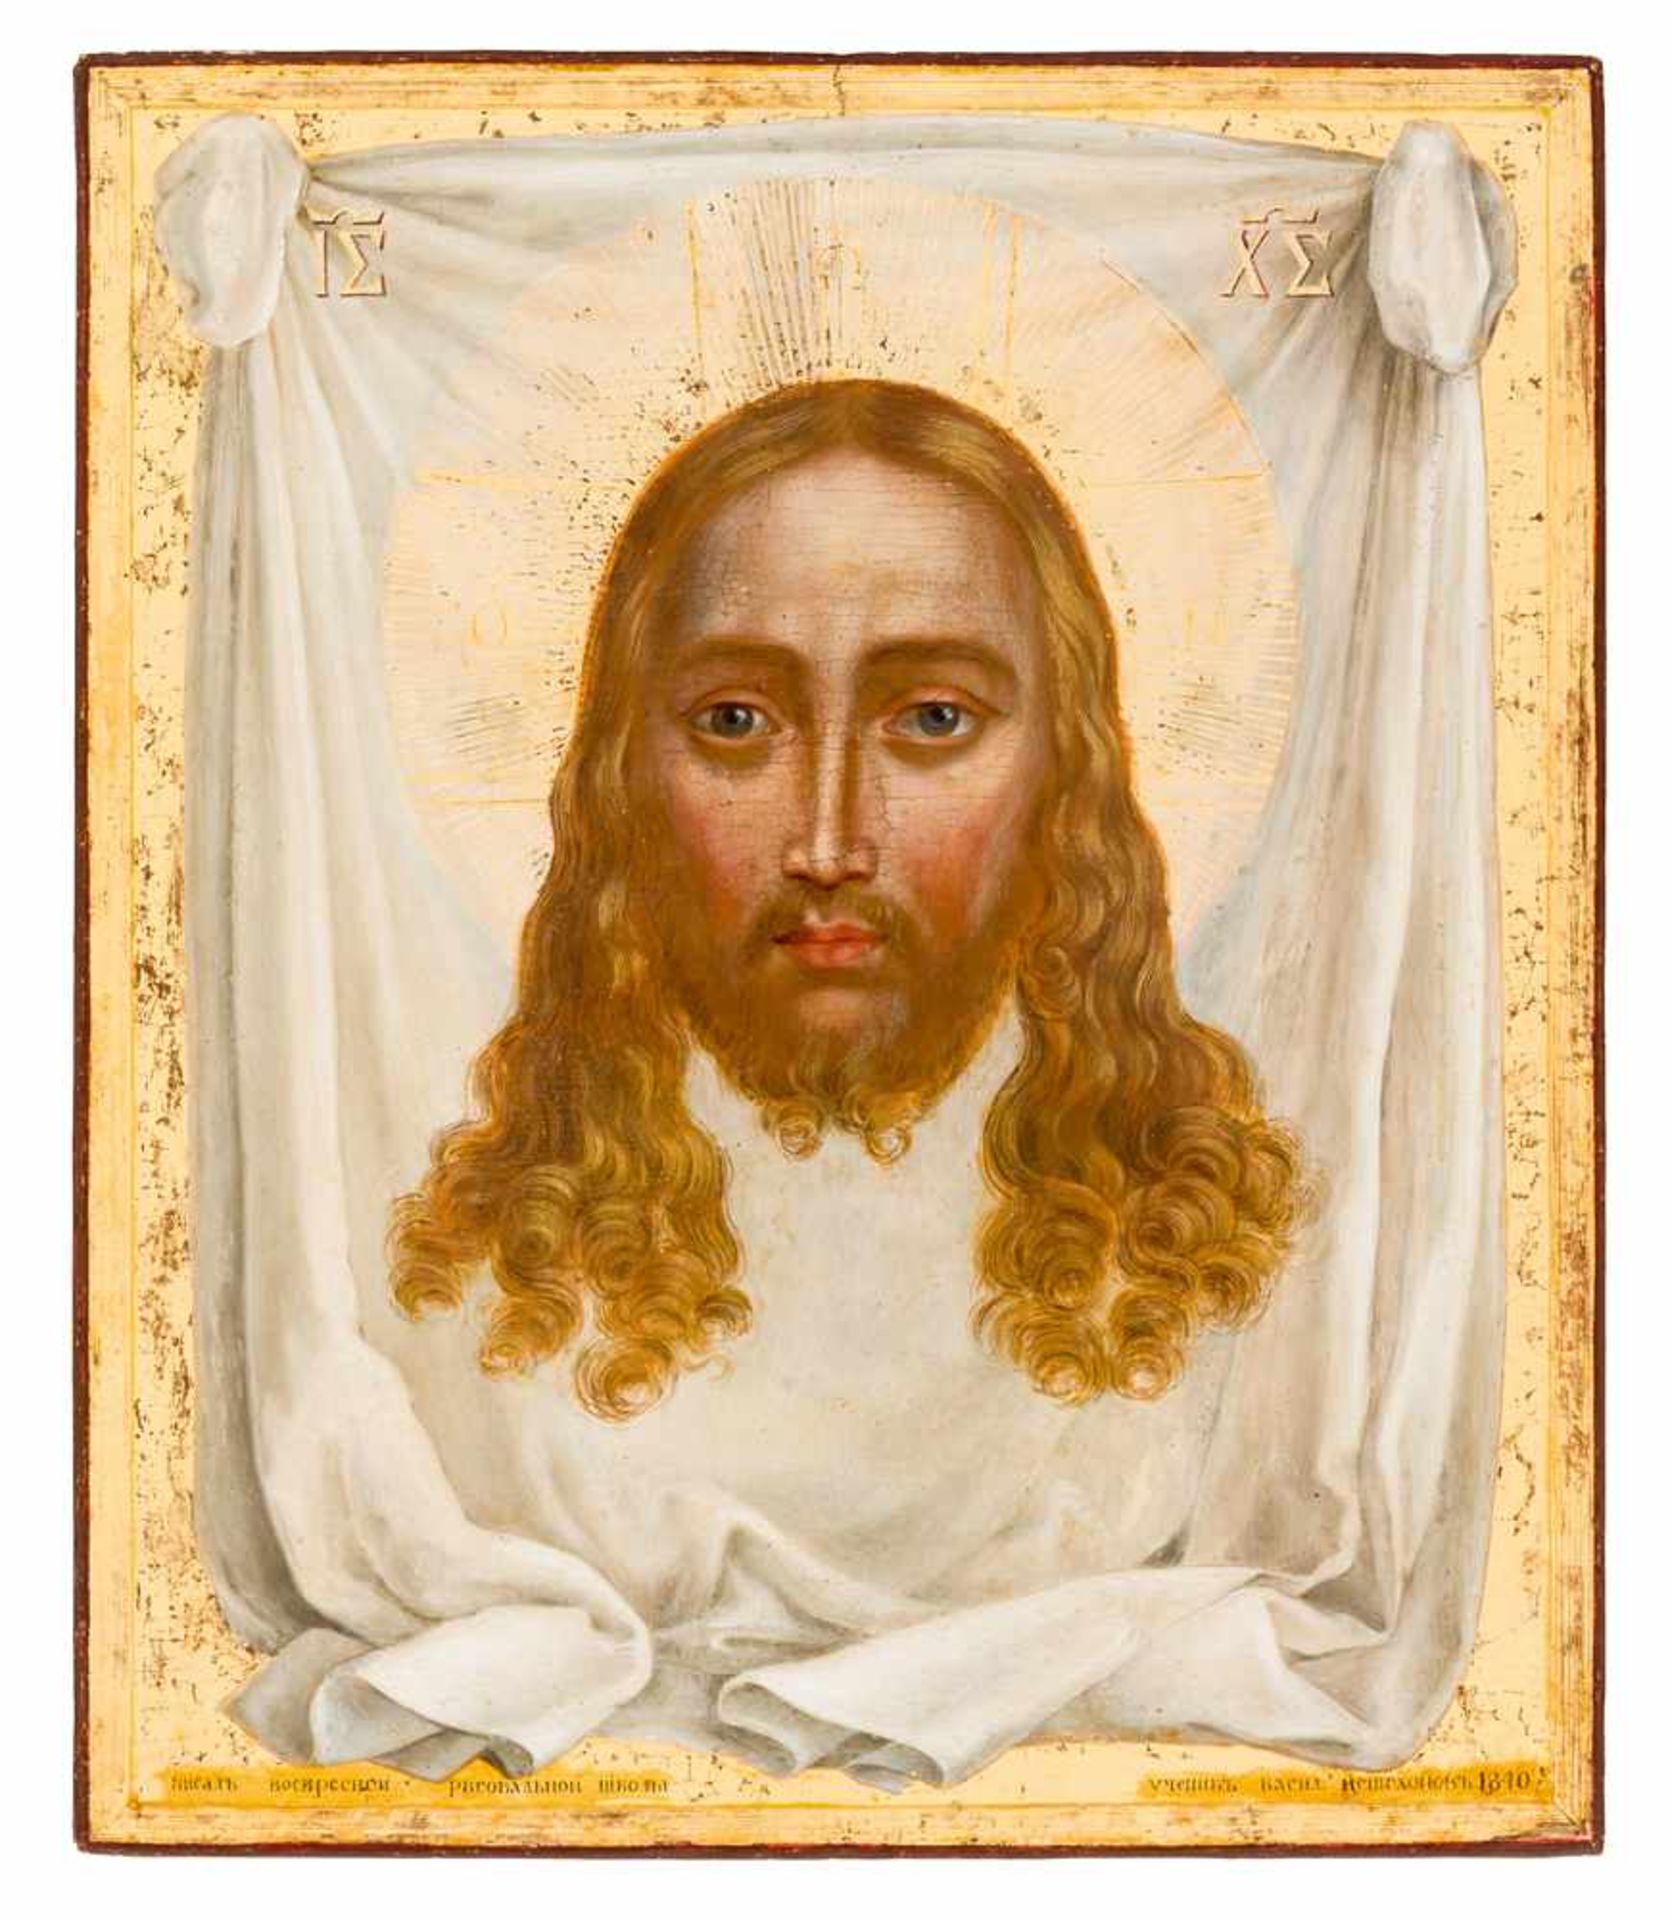 * Mandylion Jesu Russische Ikone, gemalt von Vasily Peshekhonov (1818-1888) mit Silberoklad, St.